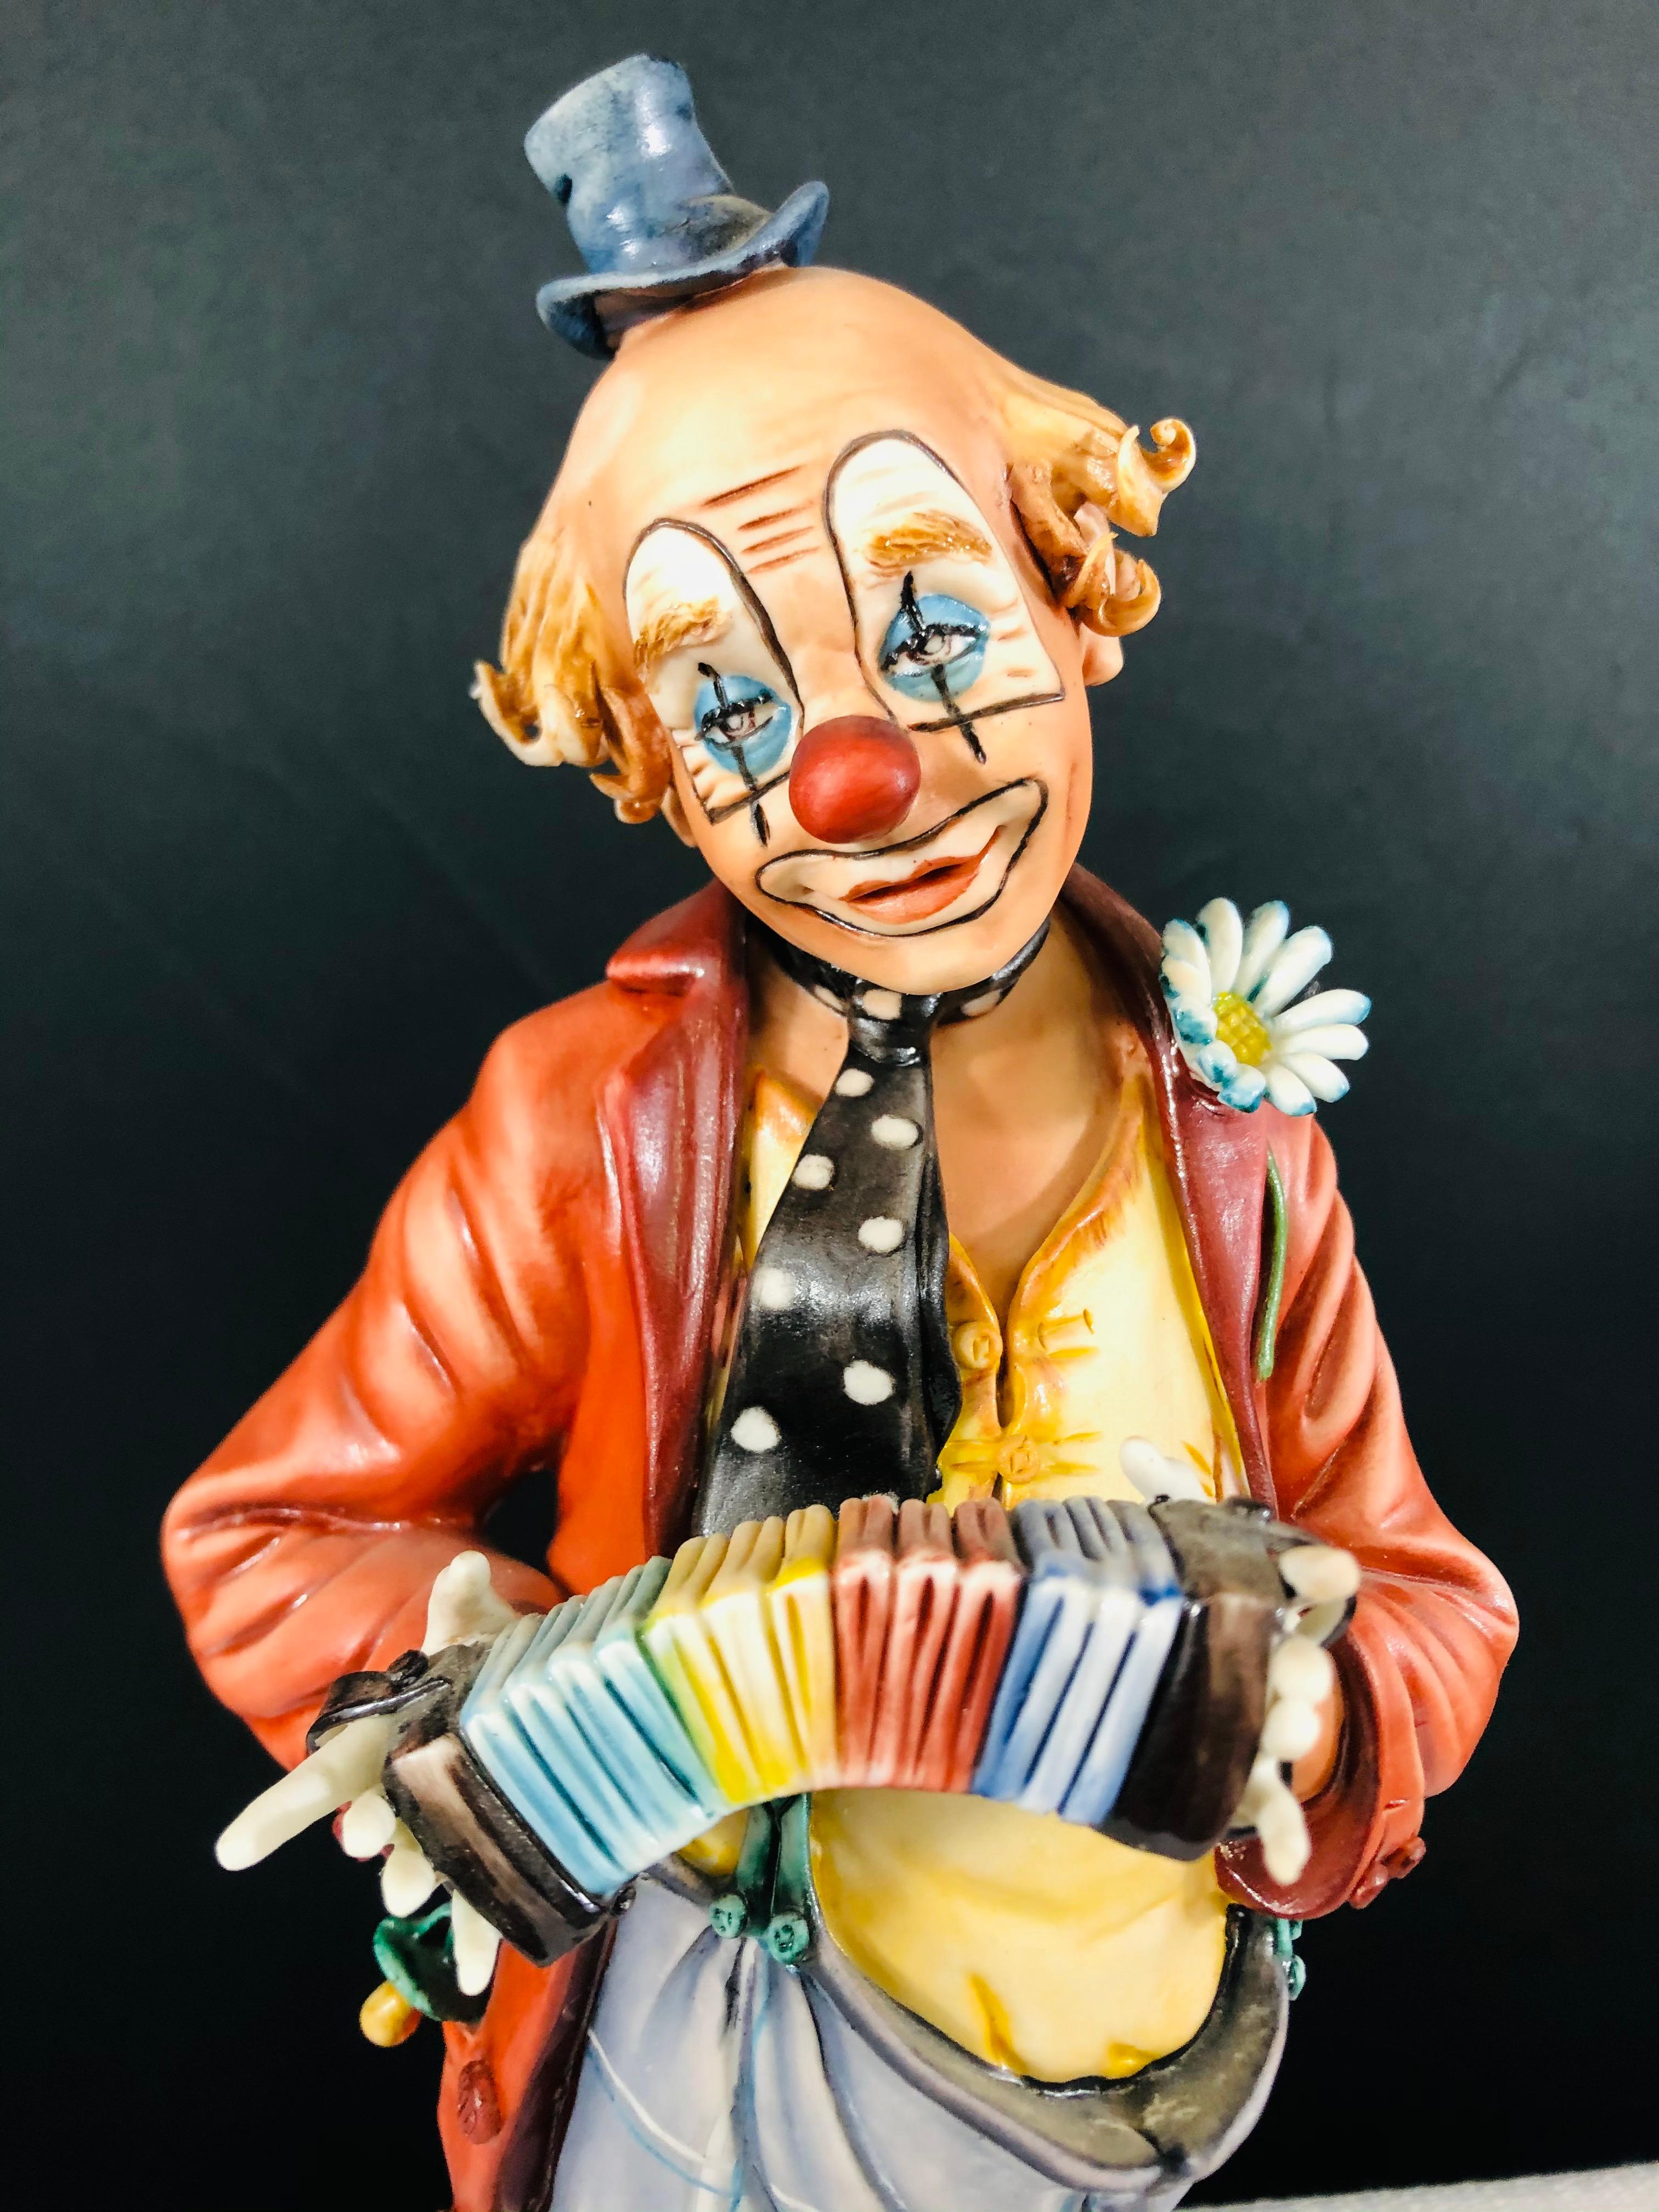 clown figurines worth money